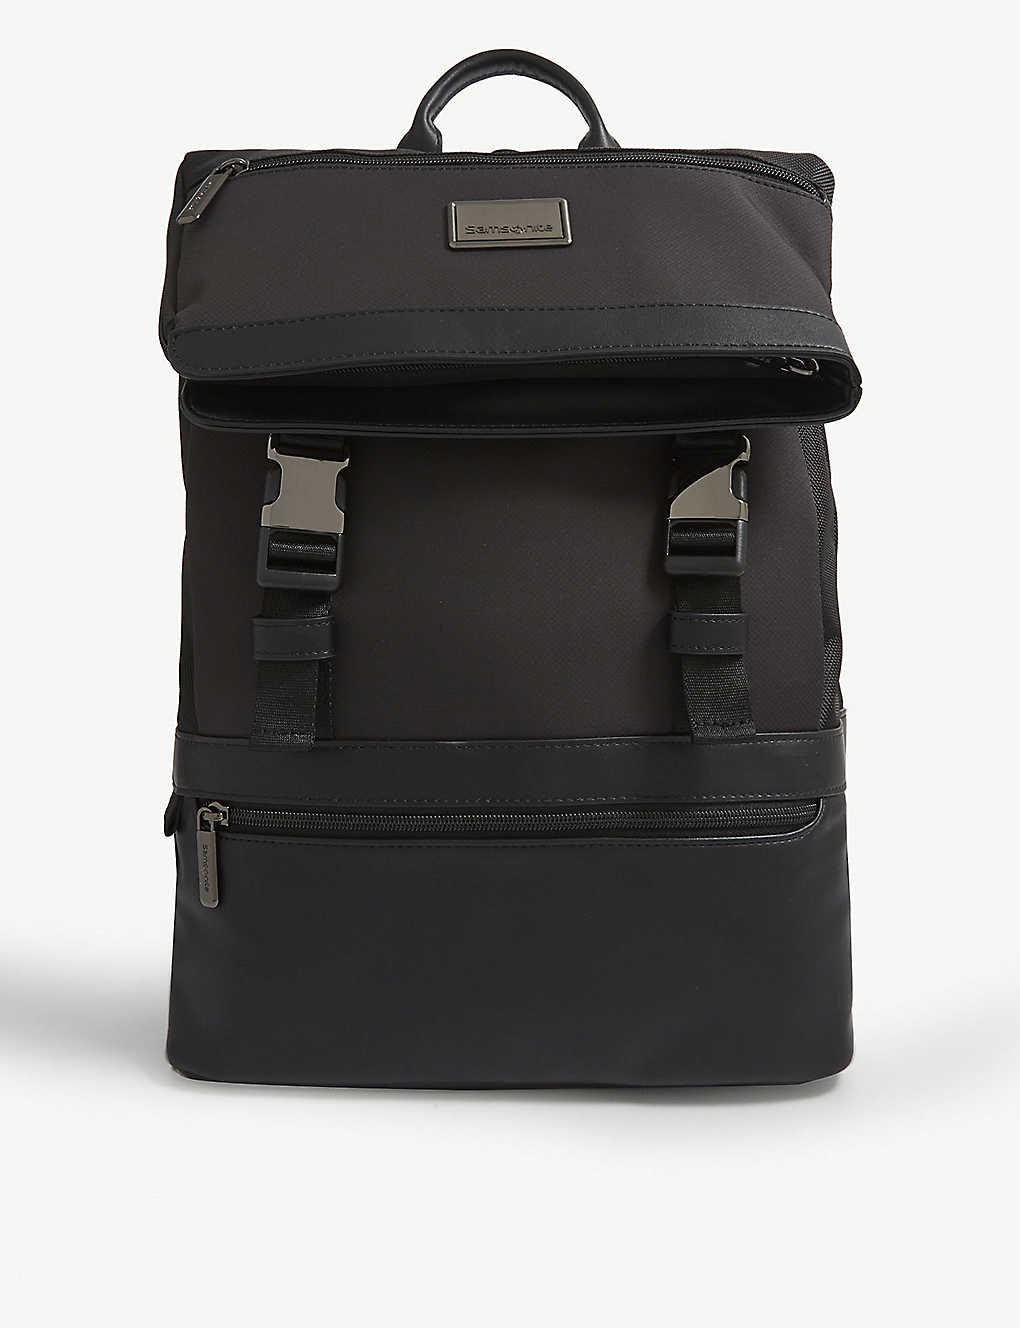 Samsonite Waymore Slimline Laptop Backpack in Black | Lyst